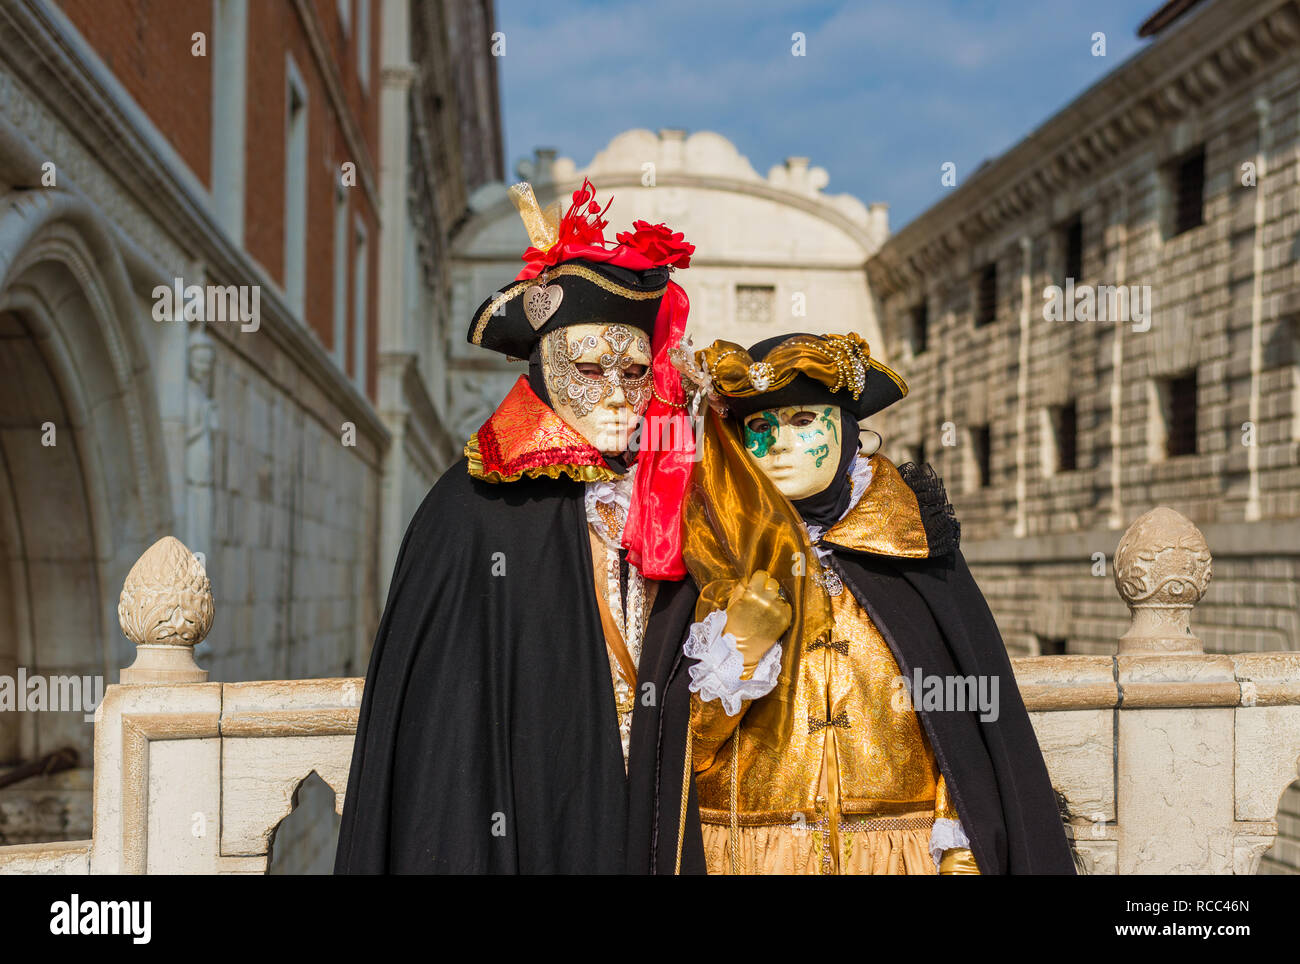 Carnevale a Venezia. Due belle maschere veneziane con il famoso Ponte dei Sospiri in background Foto Stock